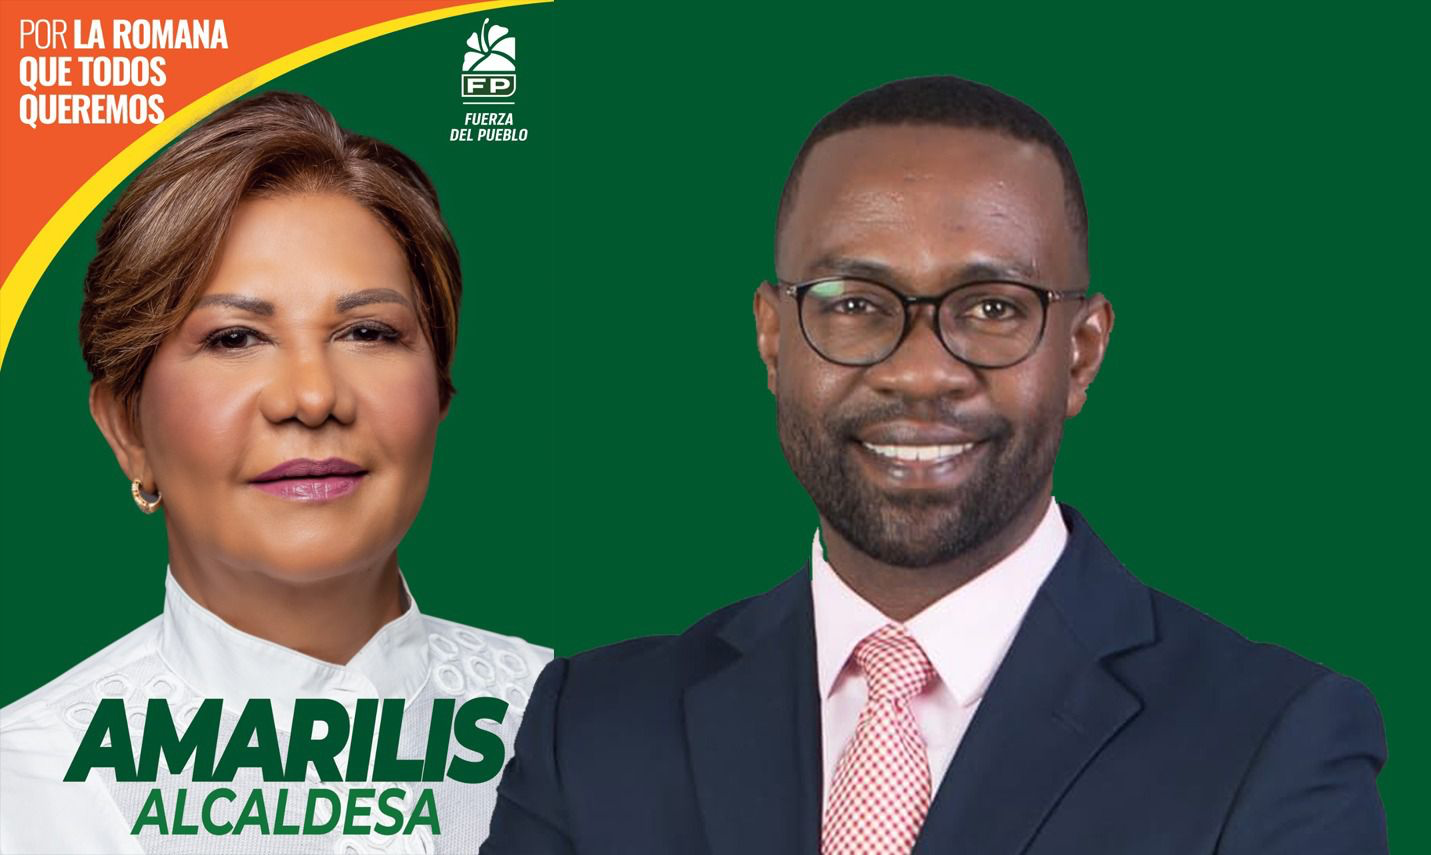 Amarilis Santana será la candidata a alcaldesa y Carlos de Pérez a diputado por la FP en La Romana